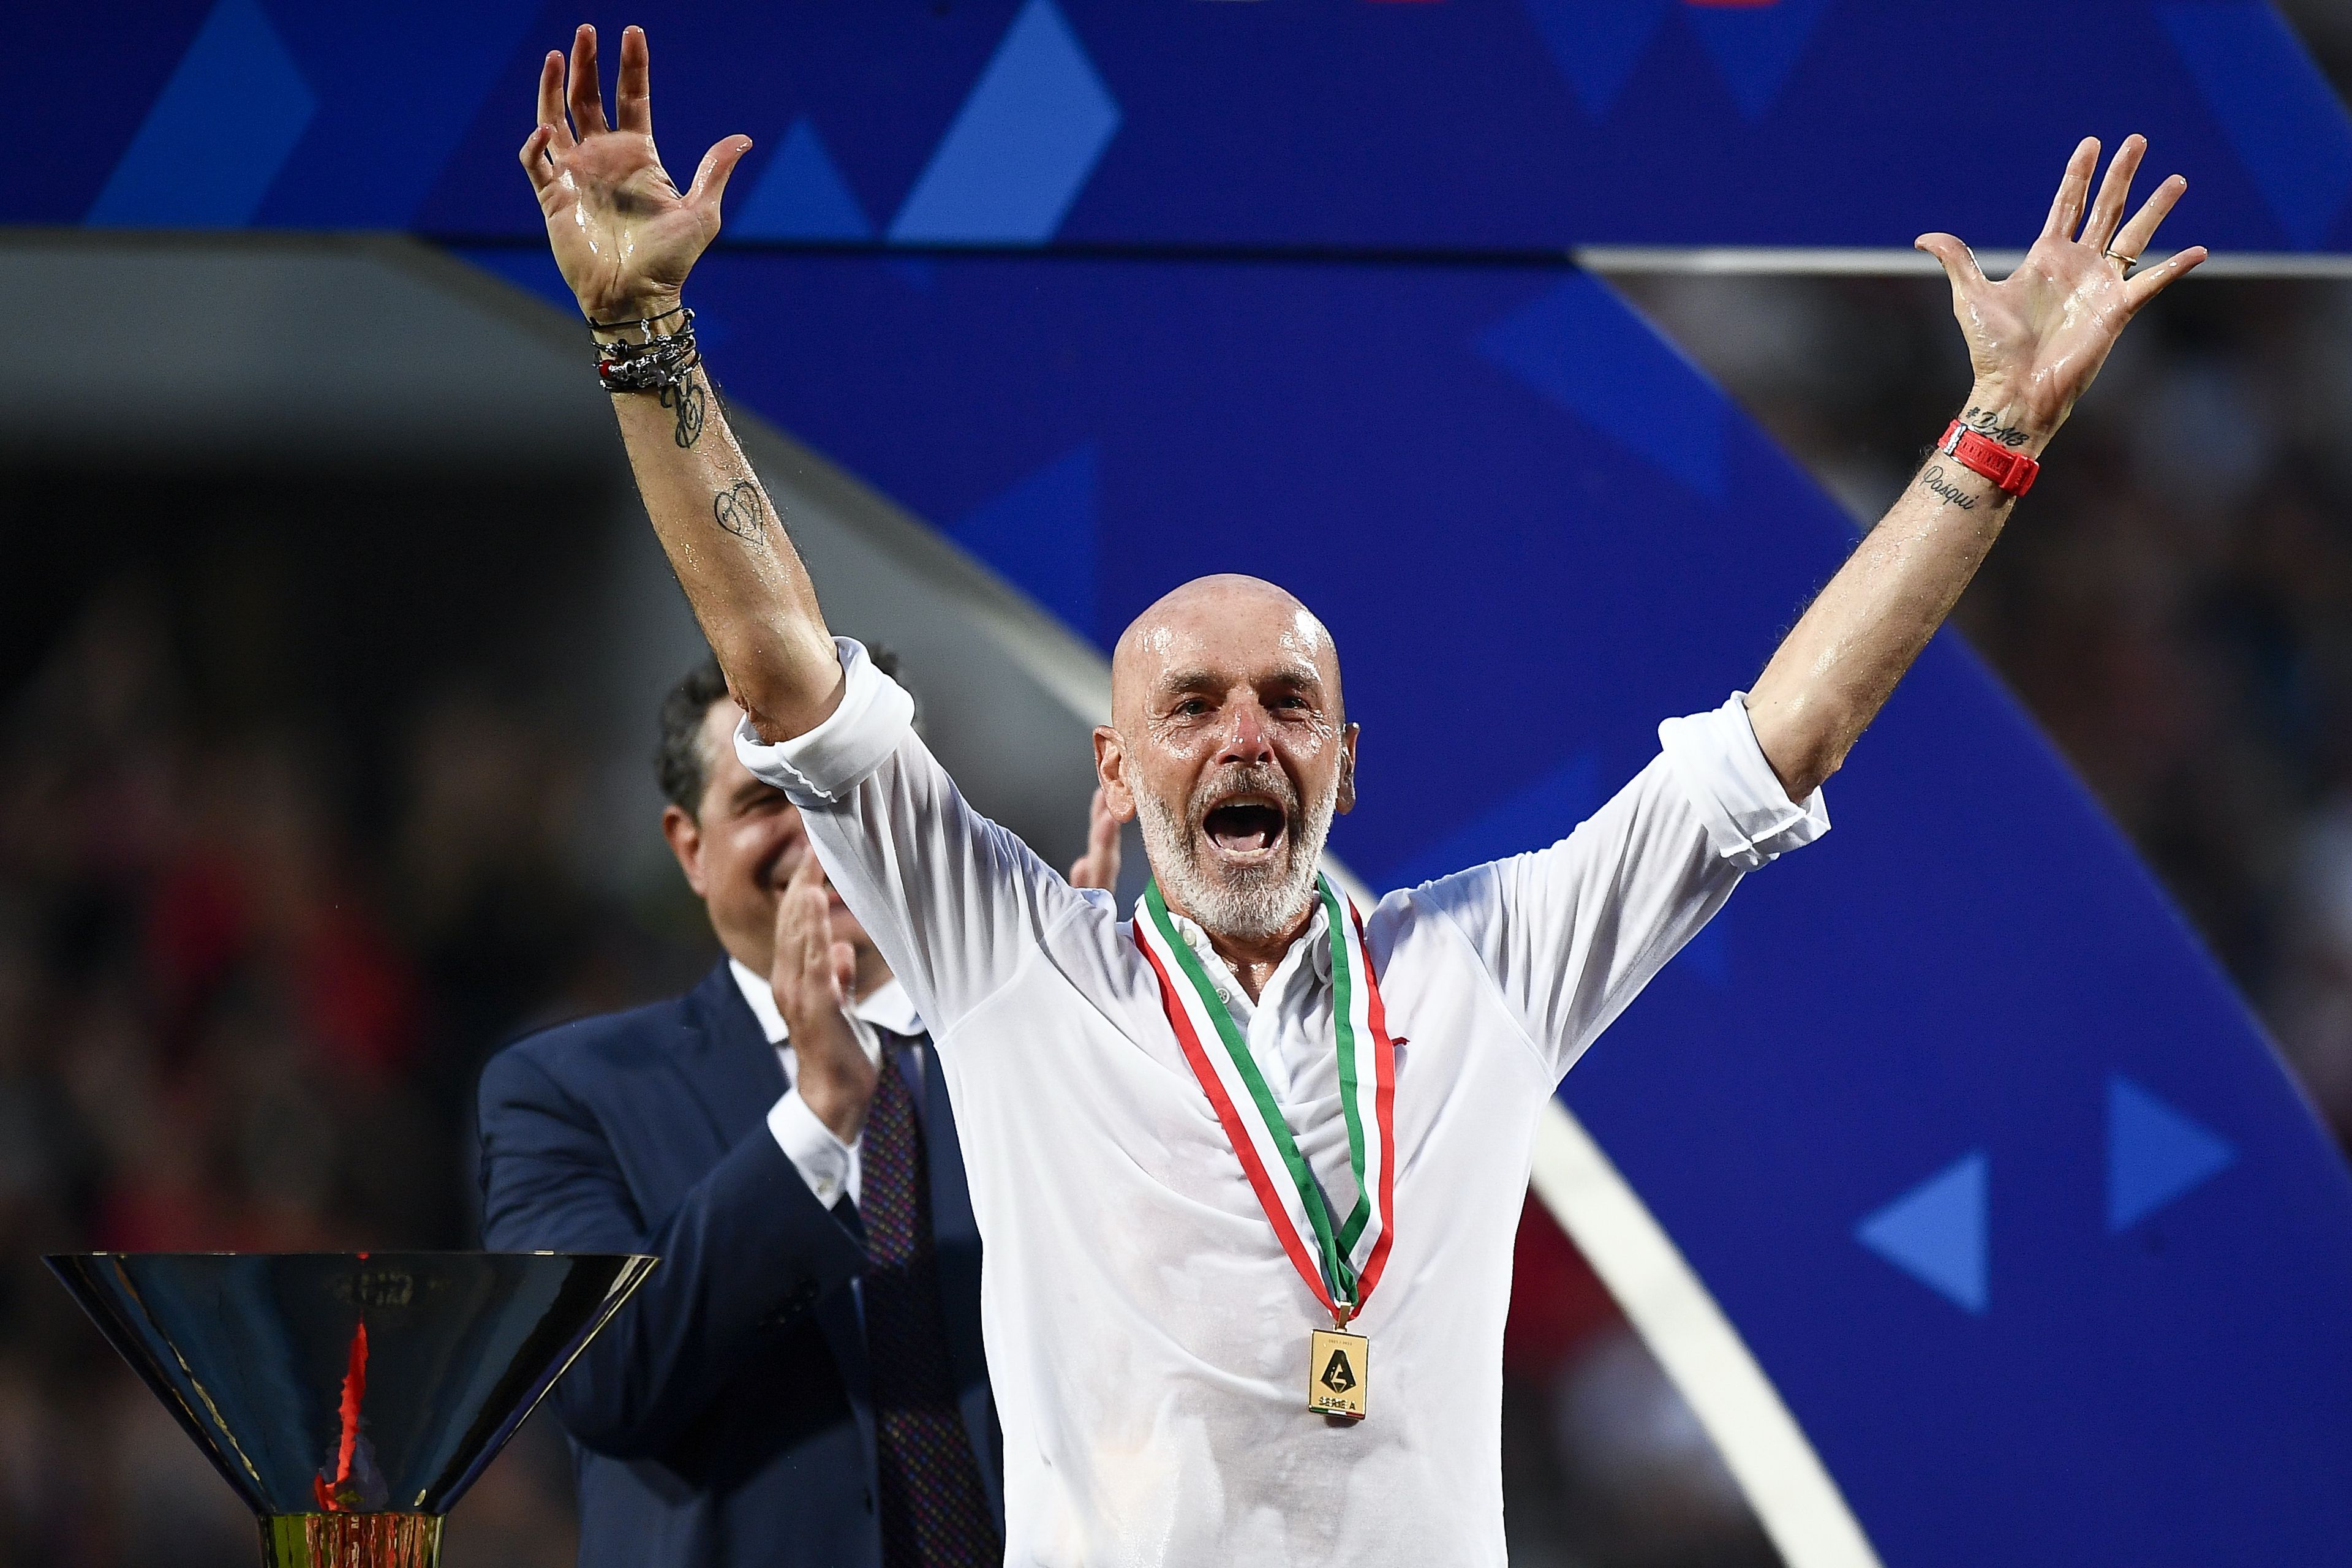 A Milan edzője visszakapja az aranyérmet, amelyet a bajnoki ünneplés során tulajdonítottak el tőle / Fotó: Gettyimages